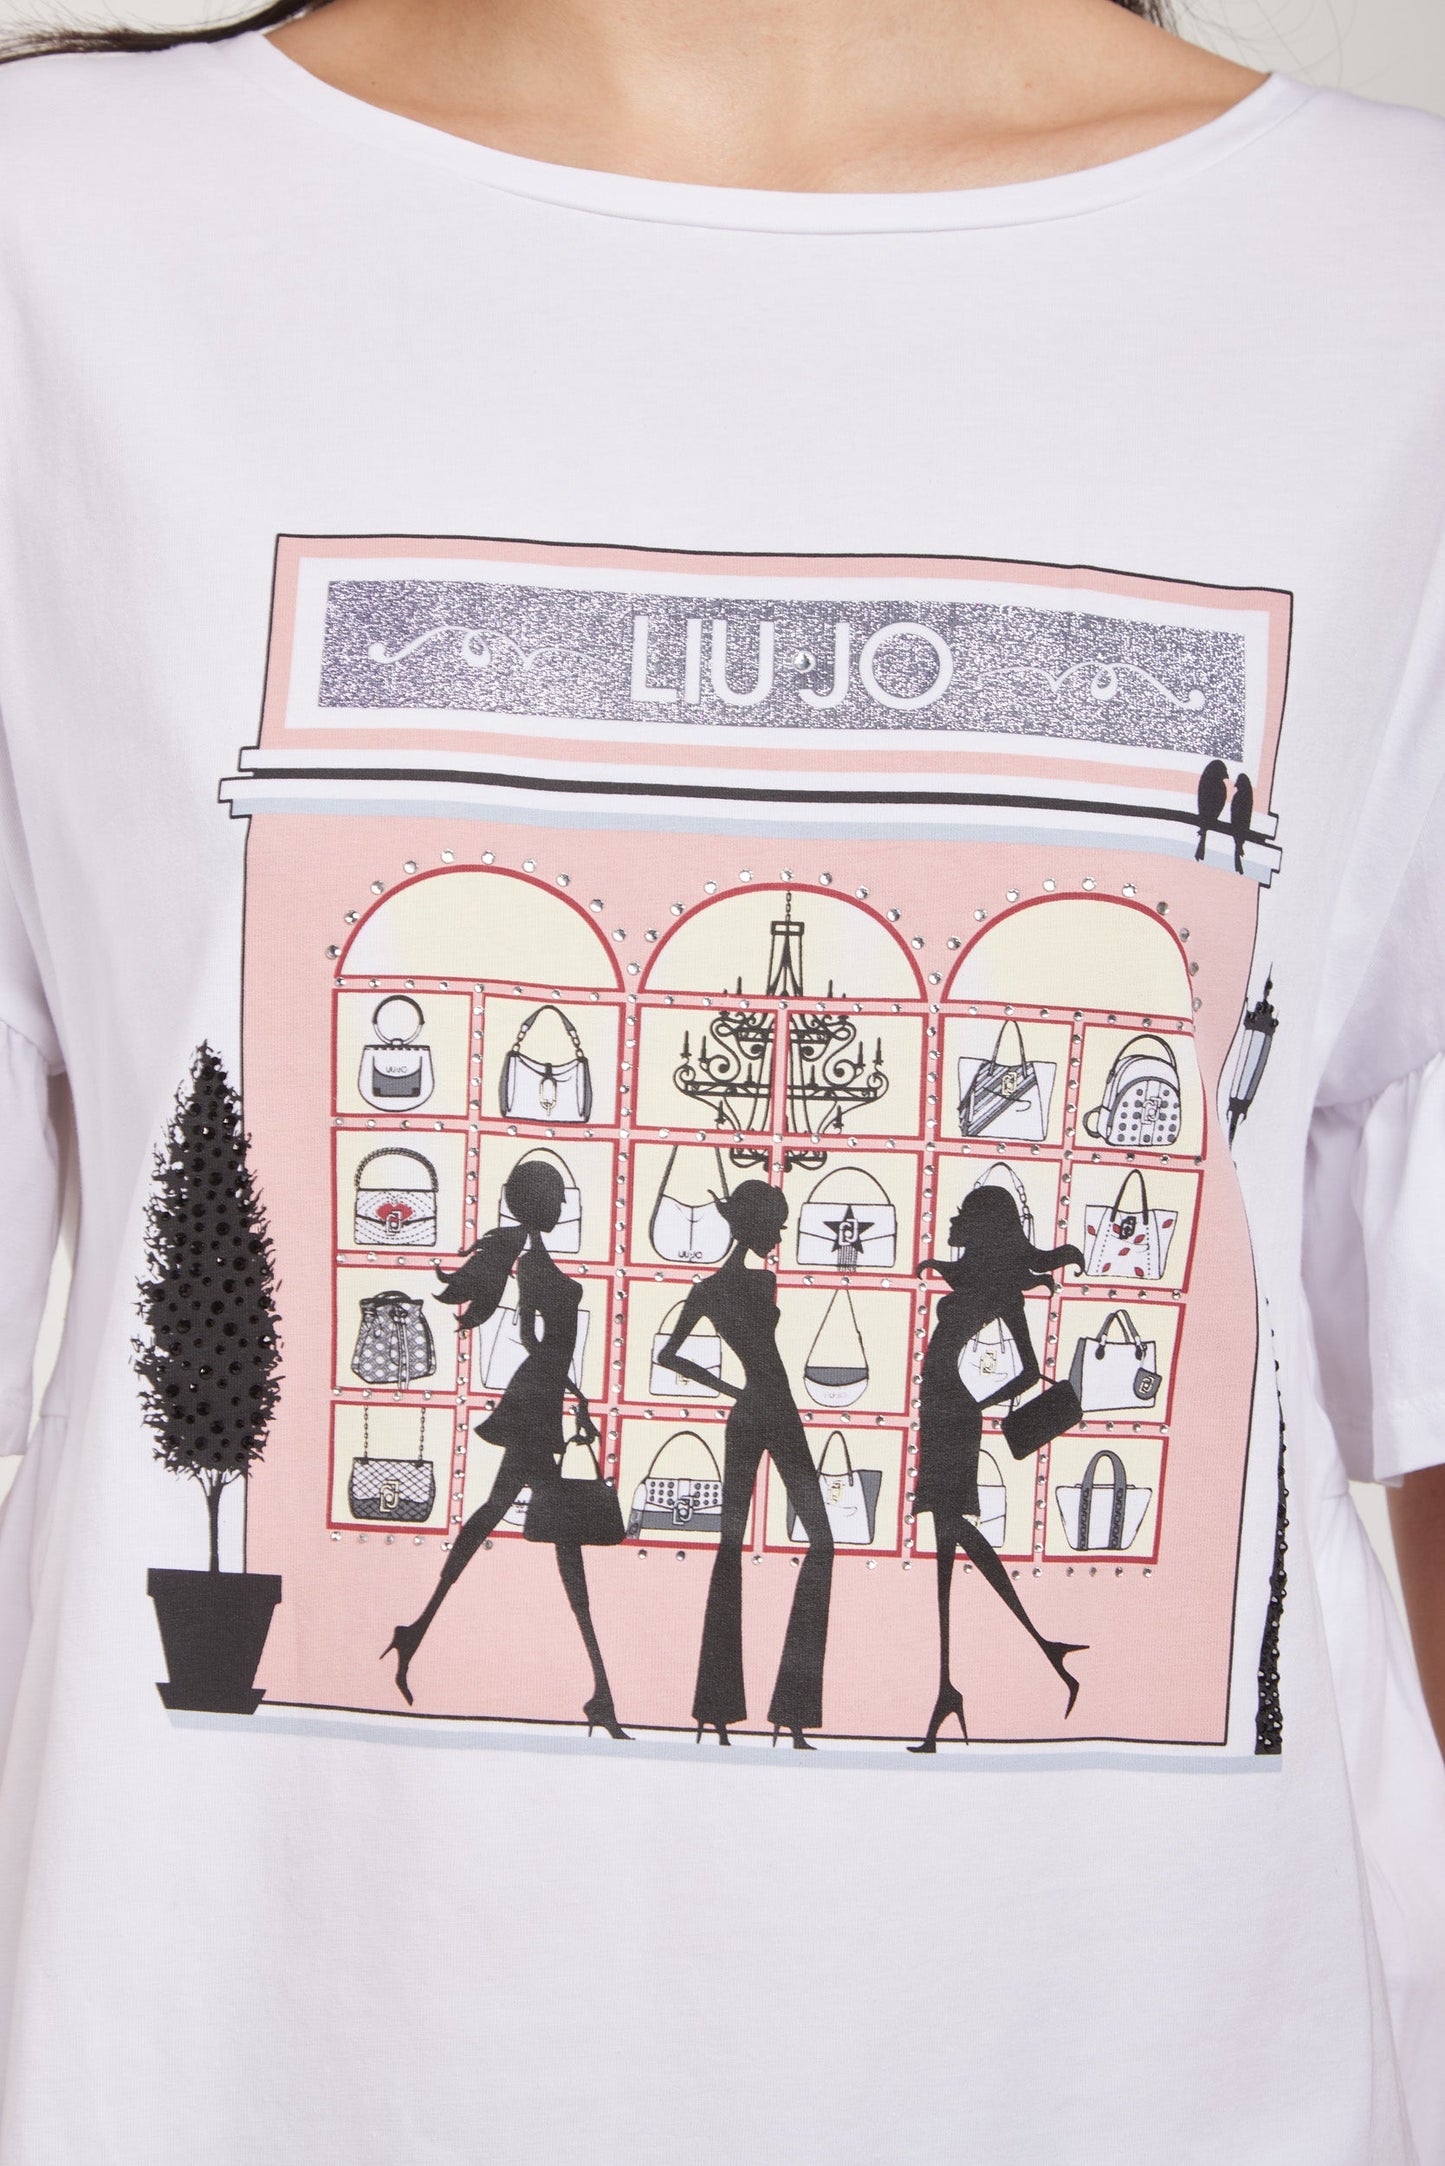 LIU-JO T-Shirt Bianca Shopping